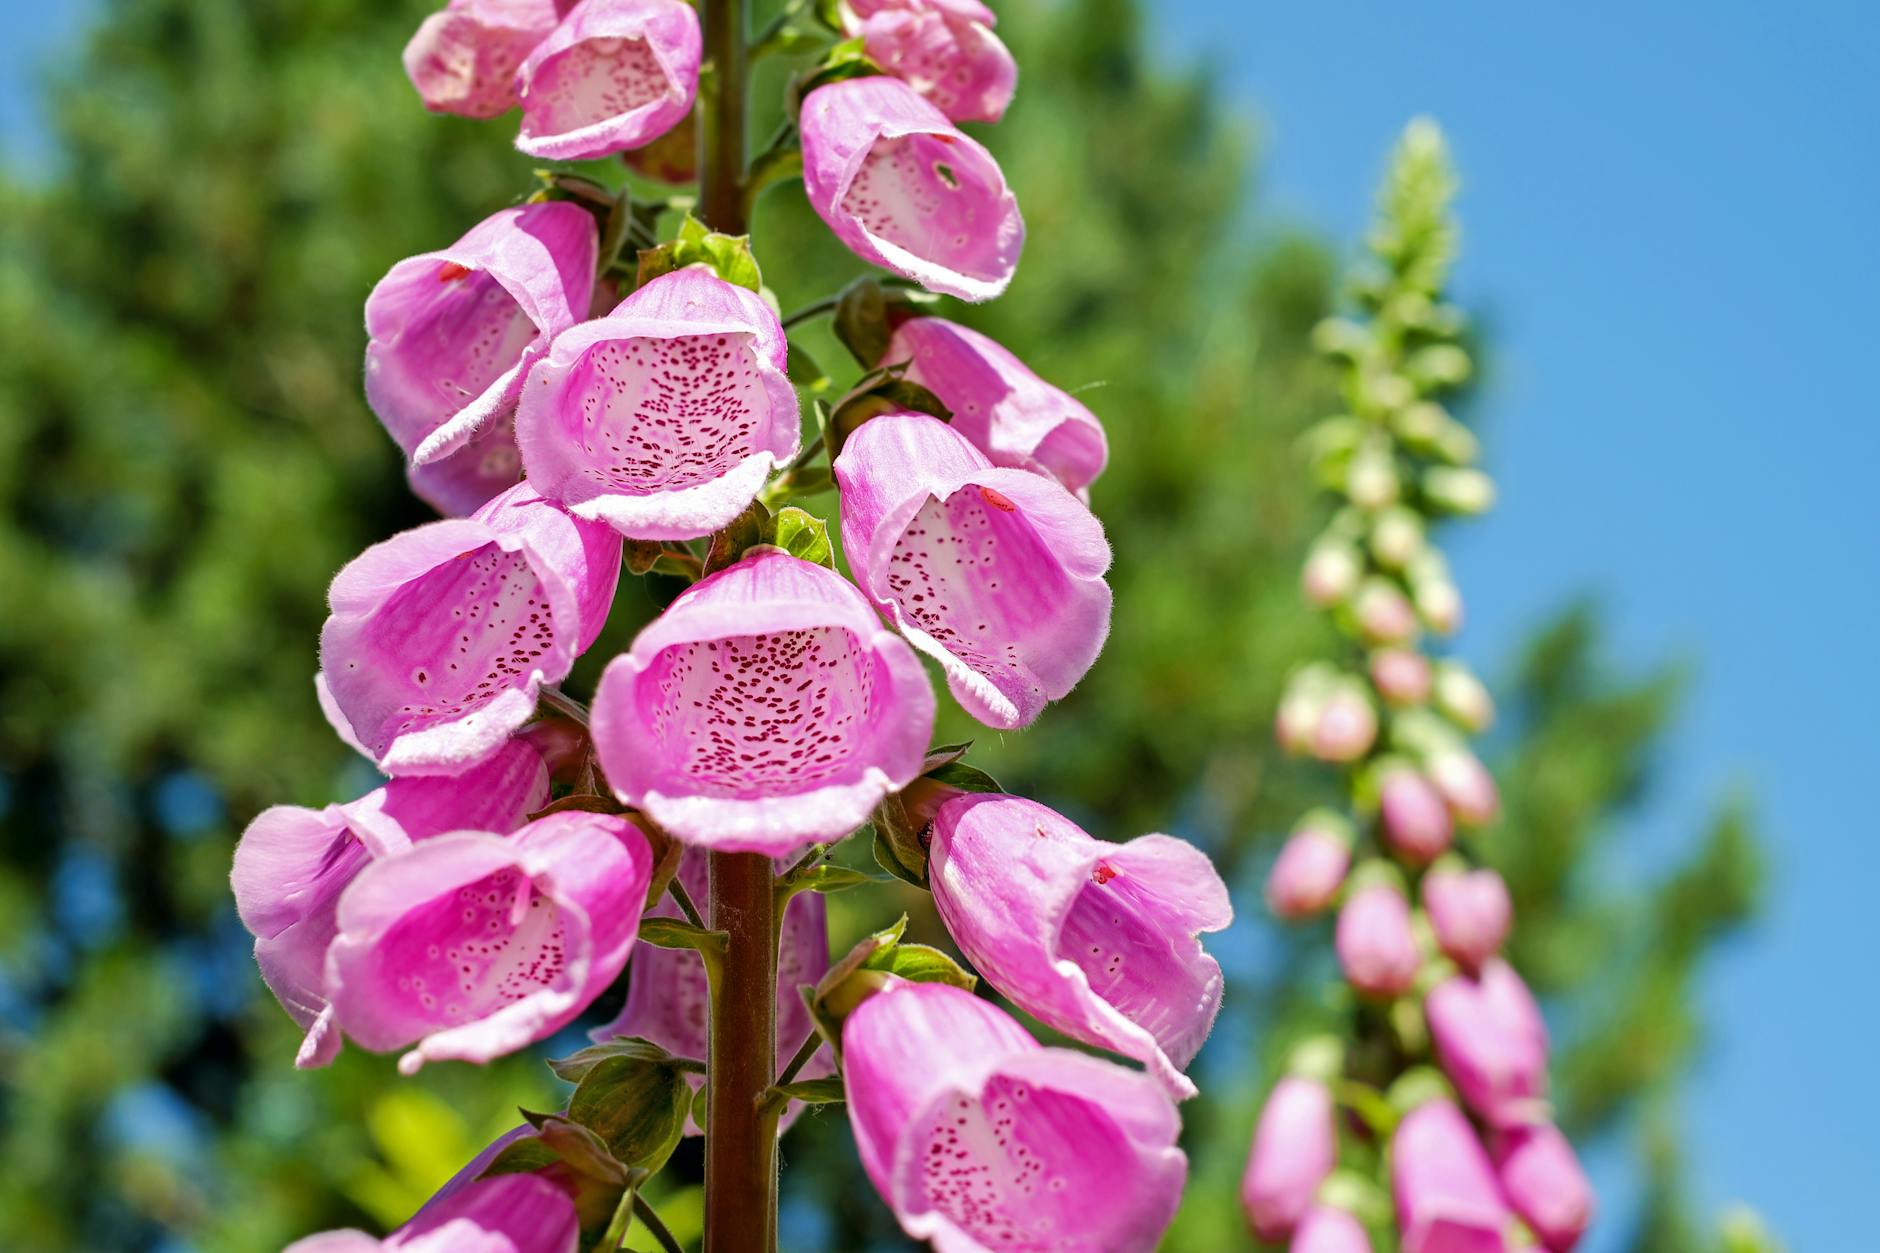 ll-Summer Perennials|7 Garden Flower Ultimate Ideas for Every Season